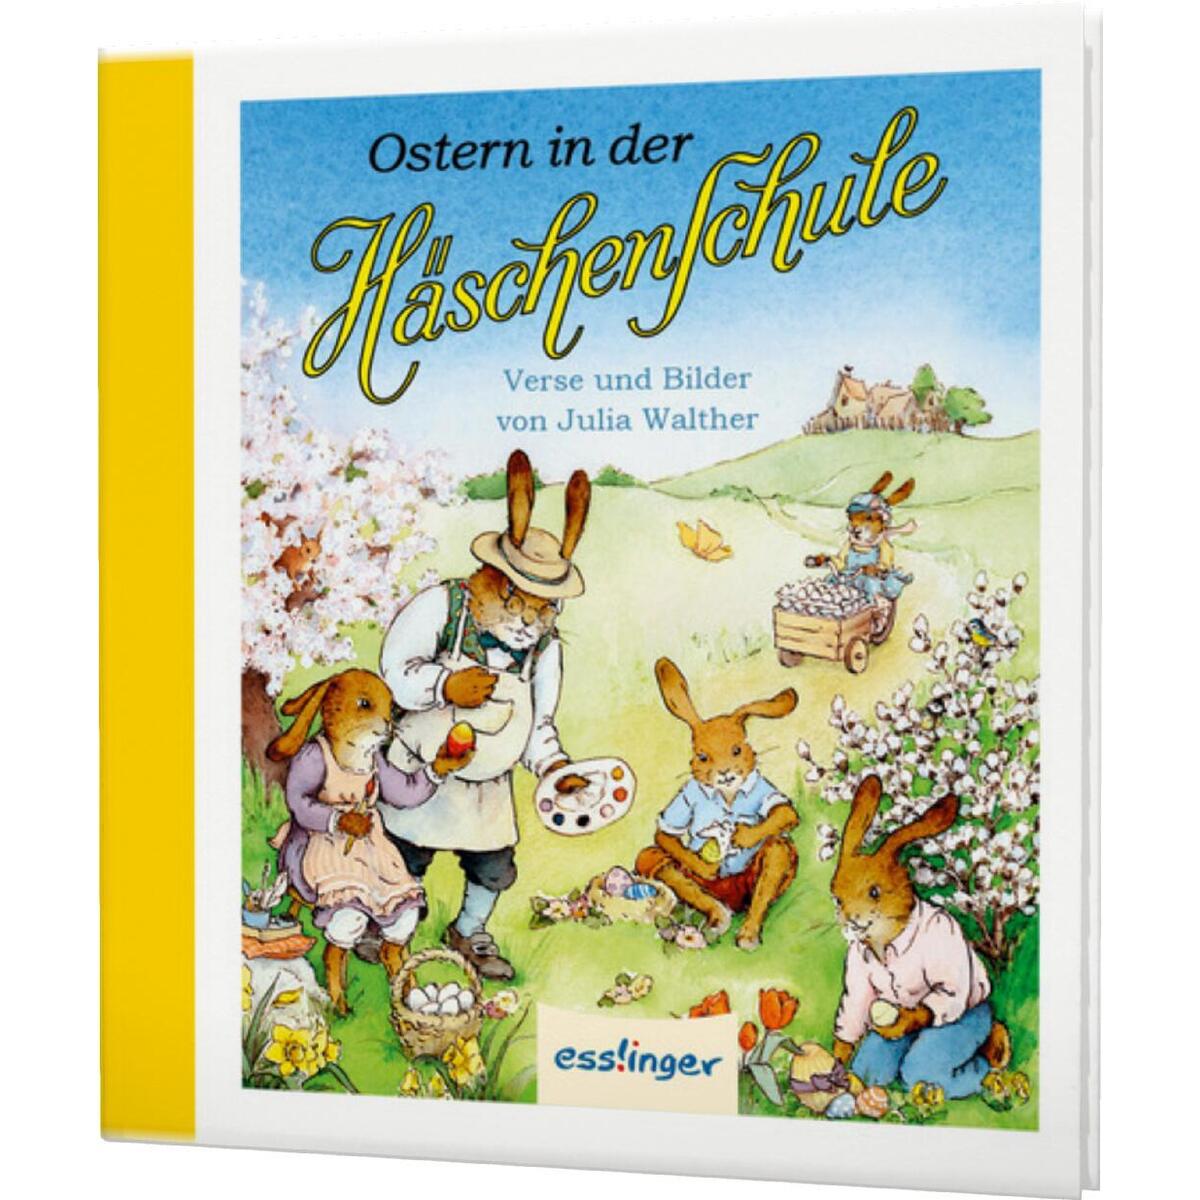 Die Häschenschule: Ostern in der Häschenschule von Esslinger Verlag